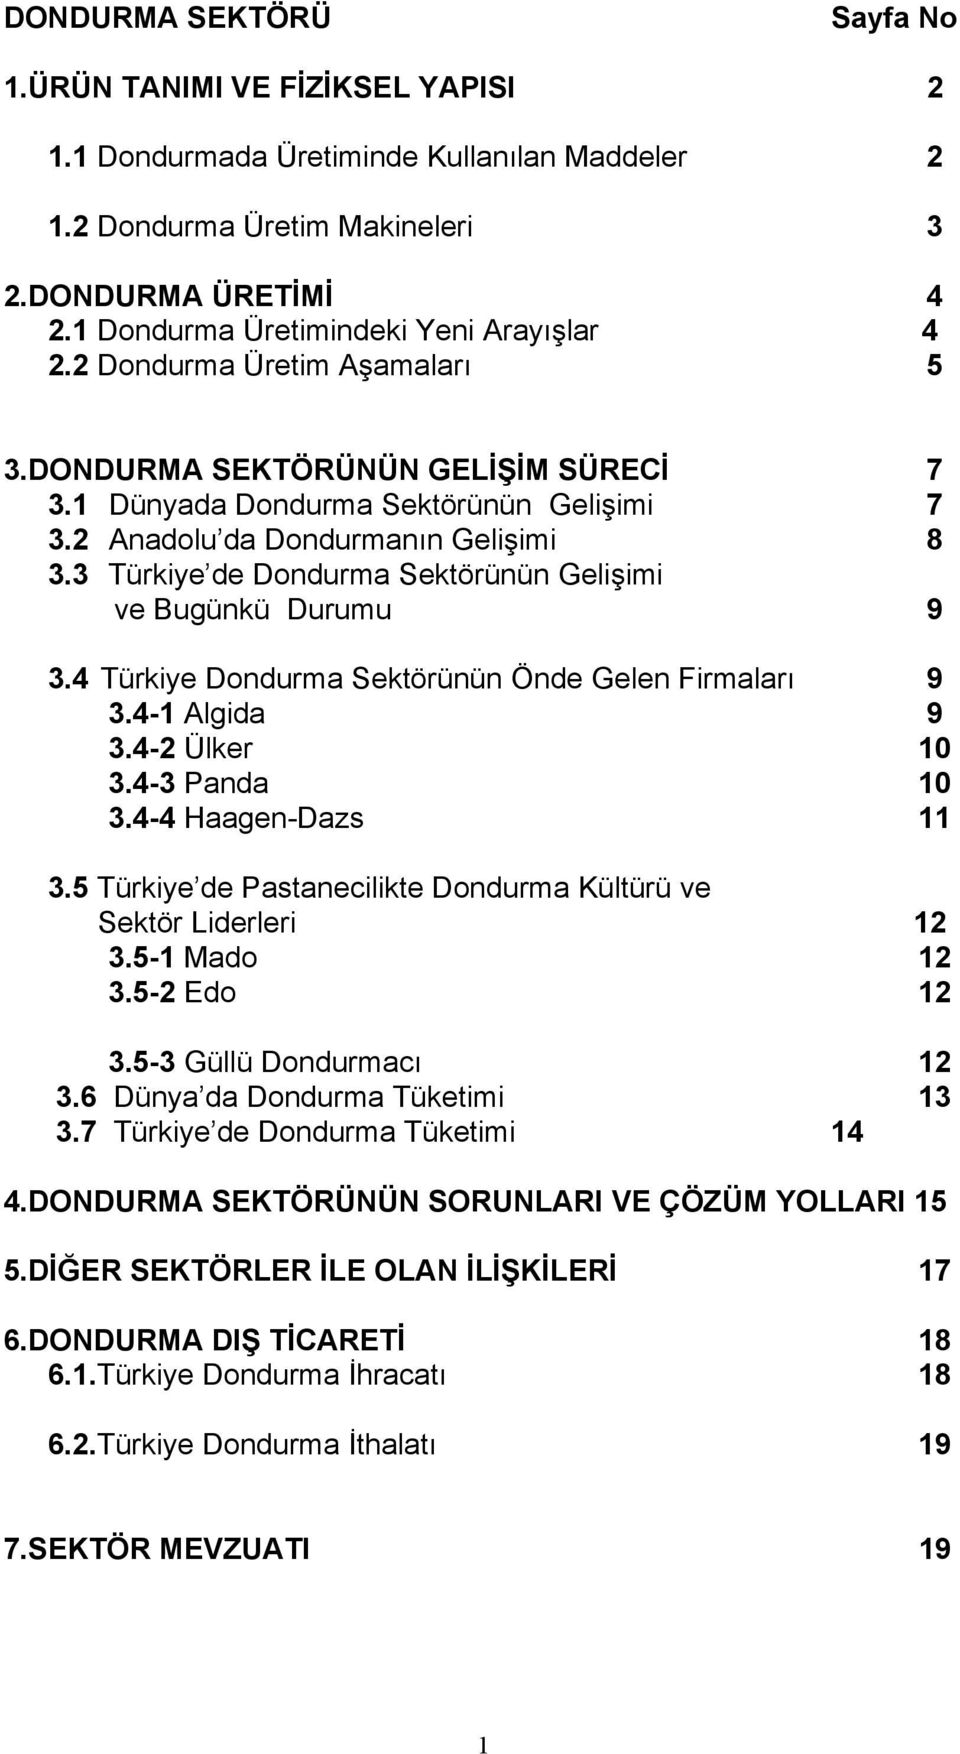 3 Türkiye de Dondurma Sektörünün Gelişimi ve Bugünkü Durumu 9 3.4 Türkiye Dondurma Sektörünün Önde Gelen Firmalarõ 9 3.4-1 Algida 9 3.4-2 Ülker 10 3.4-3 Panda 10 3.4-4 Haagen-Dazs 11 3.